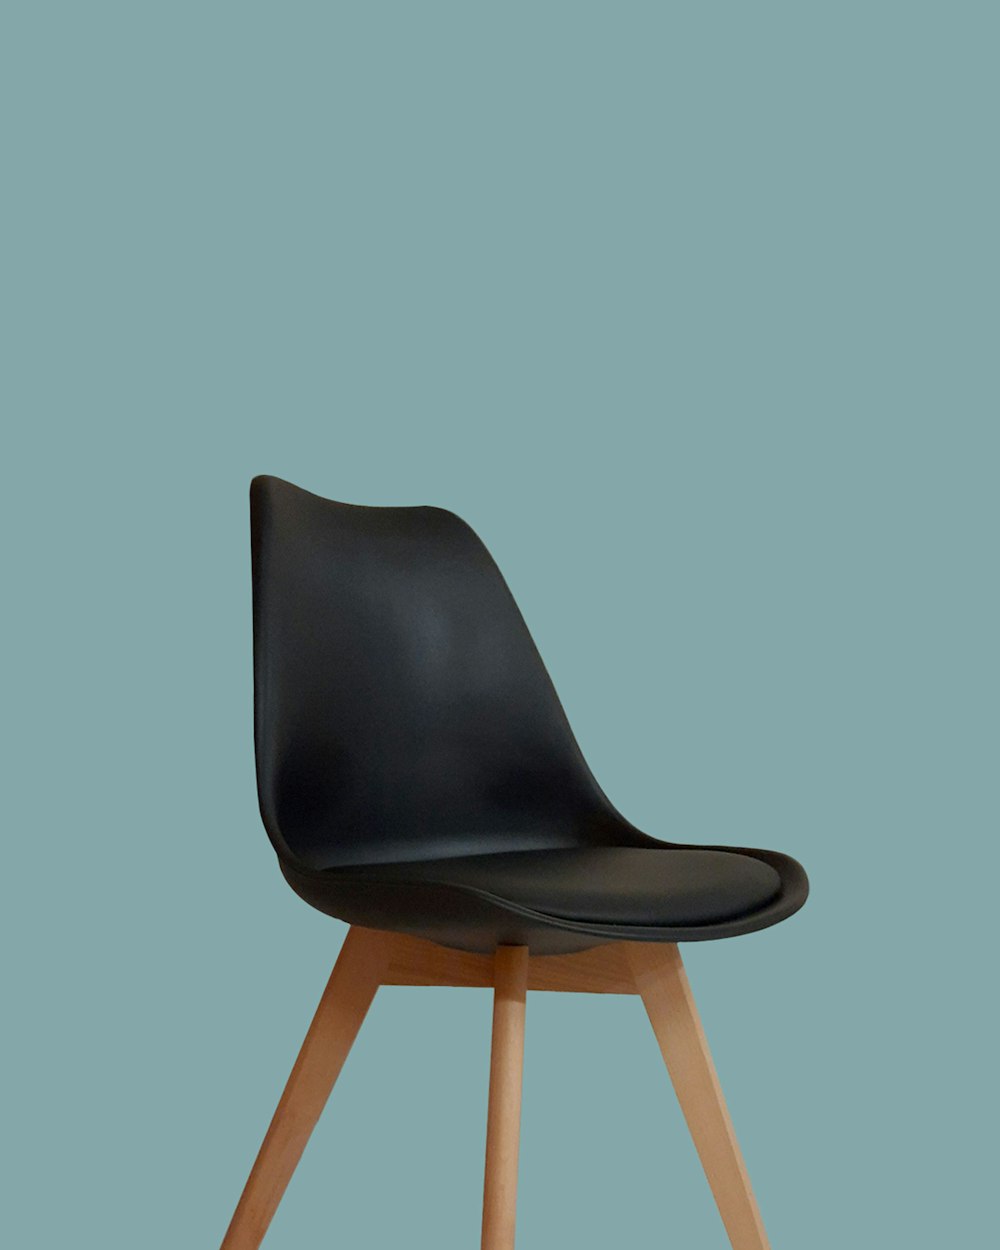 黒と茶色の木製の椅子